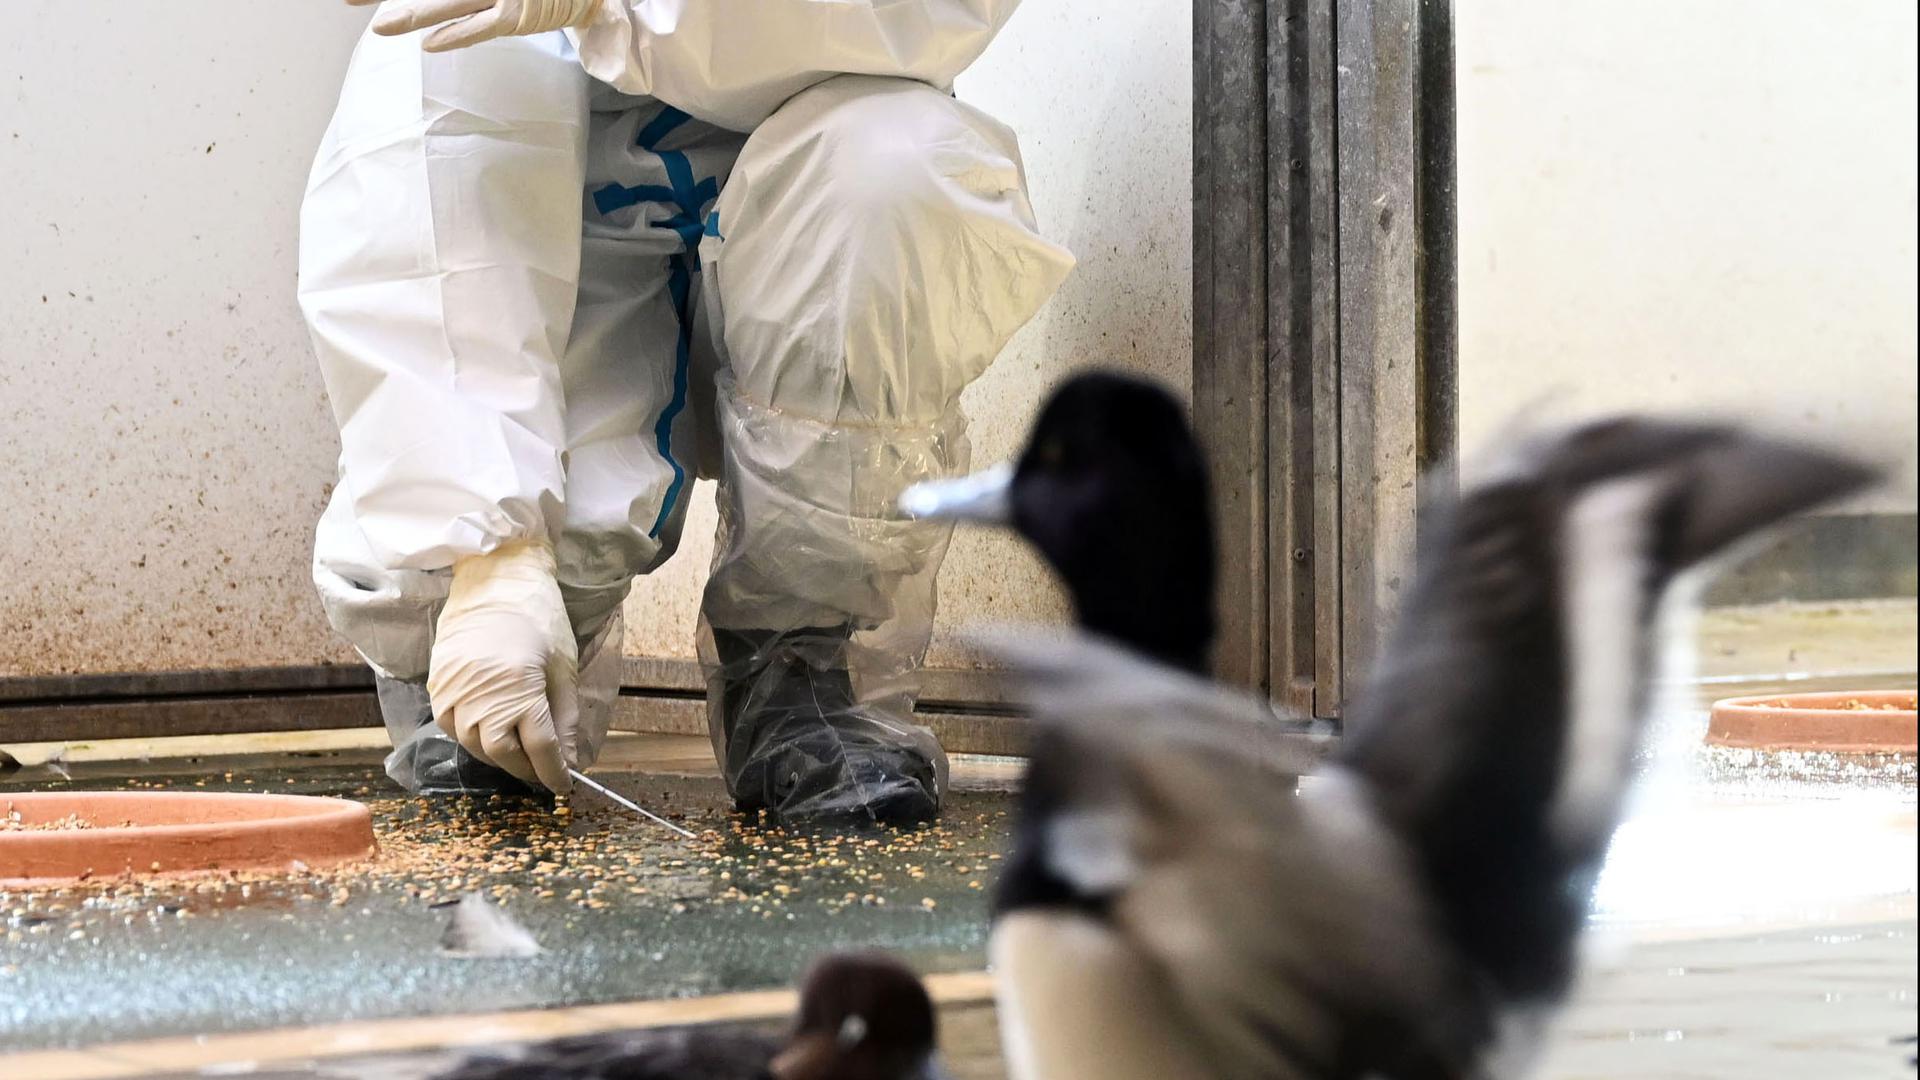 Marco Roller, Zootierarzt beim Karlsruher Zoo, nimmt bei einer abgetrennten Zierenten Vogelgruppe, die nicht mit der Vogelgrippe infiziert ist, Kotproben. Die Proben werden in einem Labor untersucht. Anfang Februar wurde aviäre Influenza, eine hochansteckende Form der Vogelgrippe, im Karlsruher Zoo nachgewiesen.